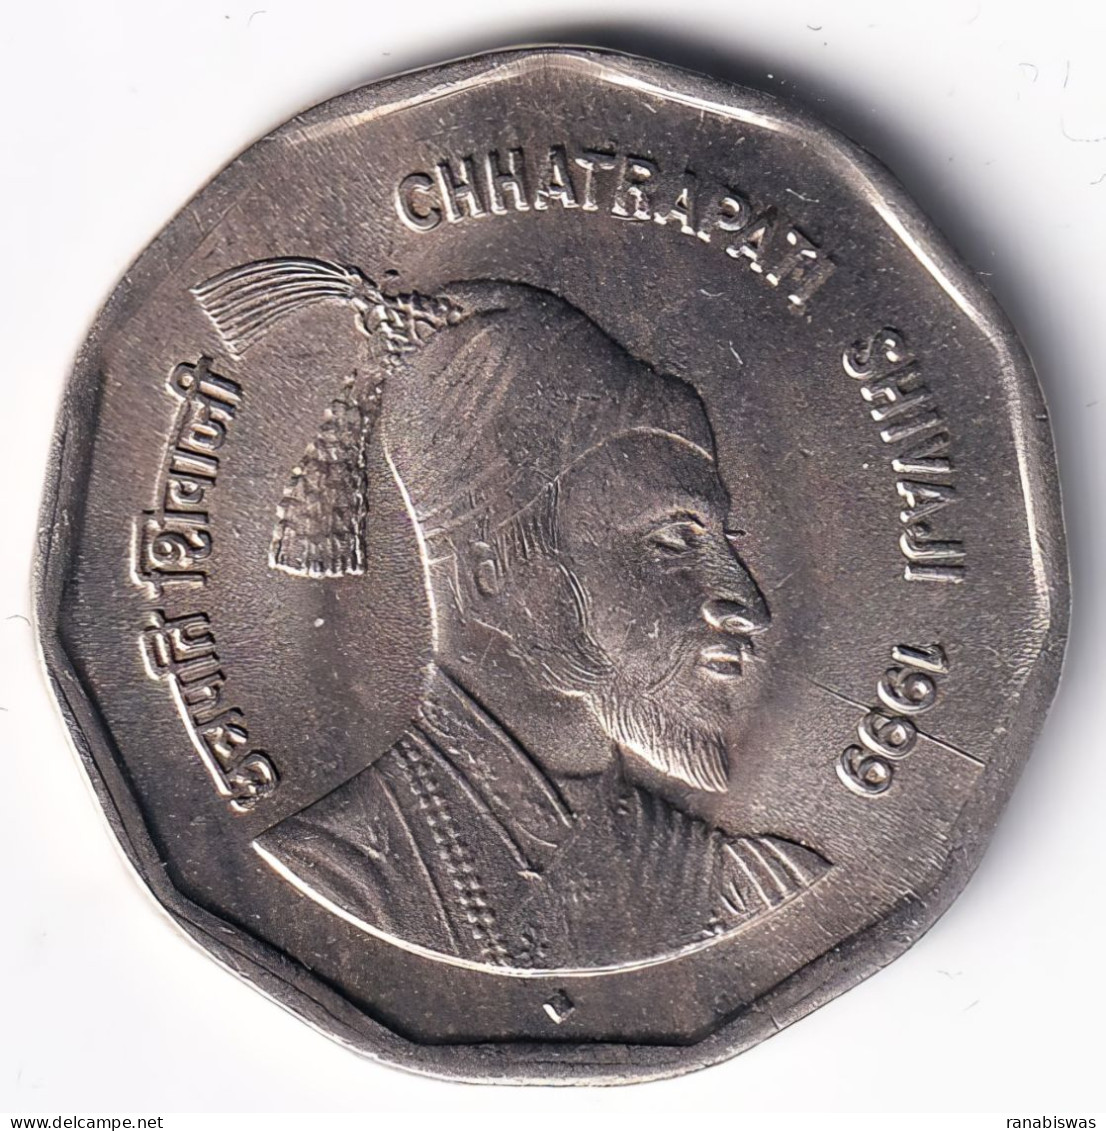 INDIA COIN LOT 73, 2 RUPEES 1999, CHHATRAPATI SHIVAJI, BOMBAY MINT, AUNC, SCARE - Indien